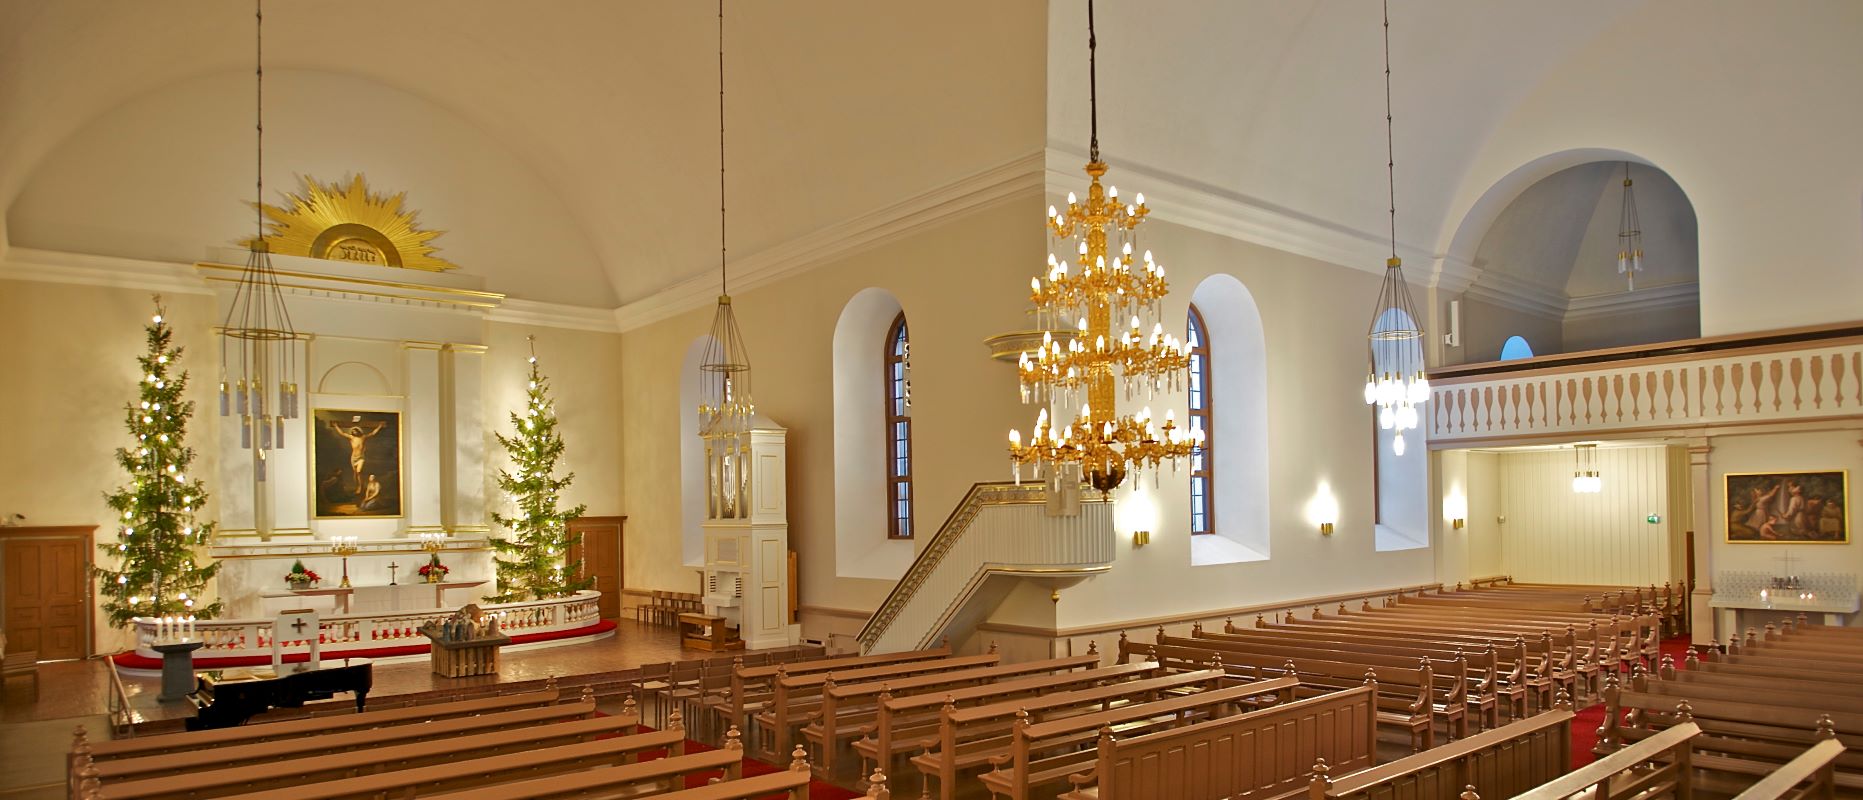 Näkymä urkuparvelta Tuomiokirkon kirkkosaliin, jossa näkyy alttarialue joulukuusineen.